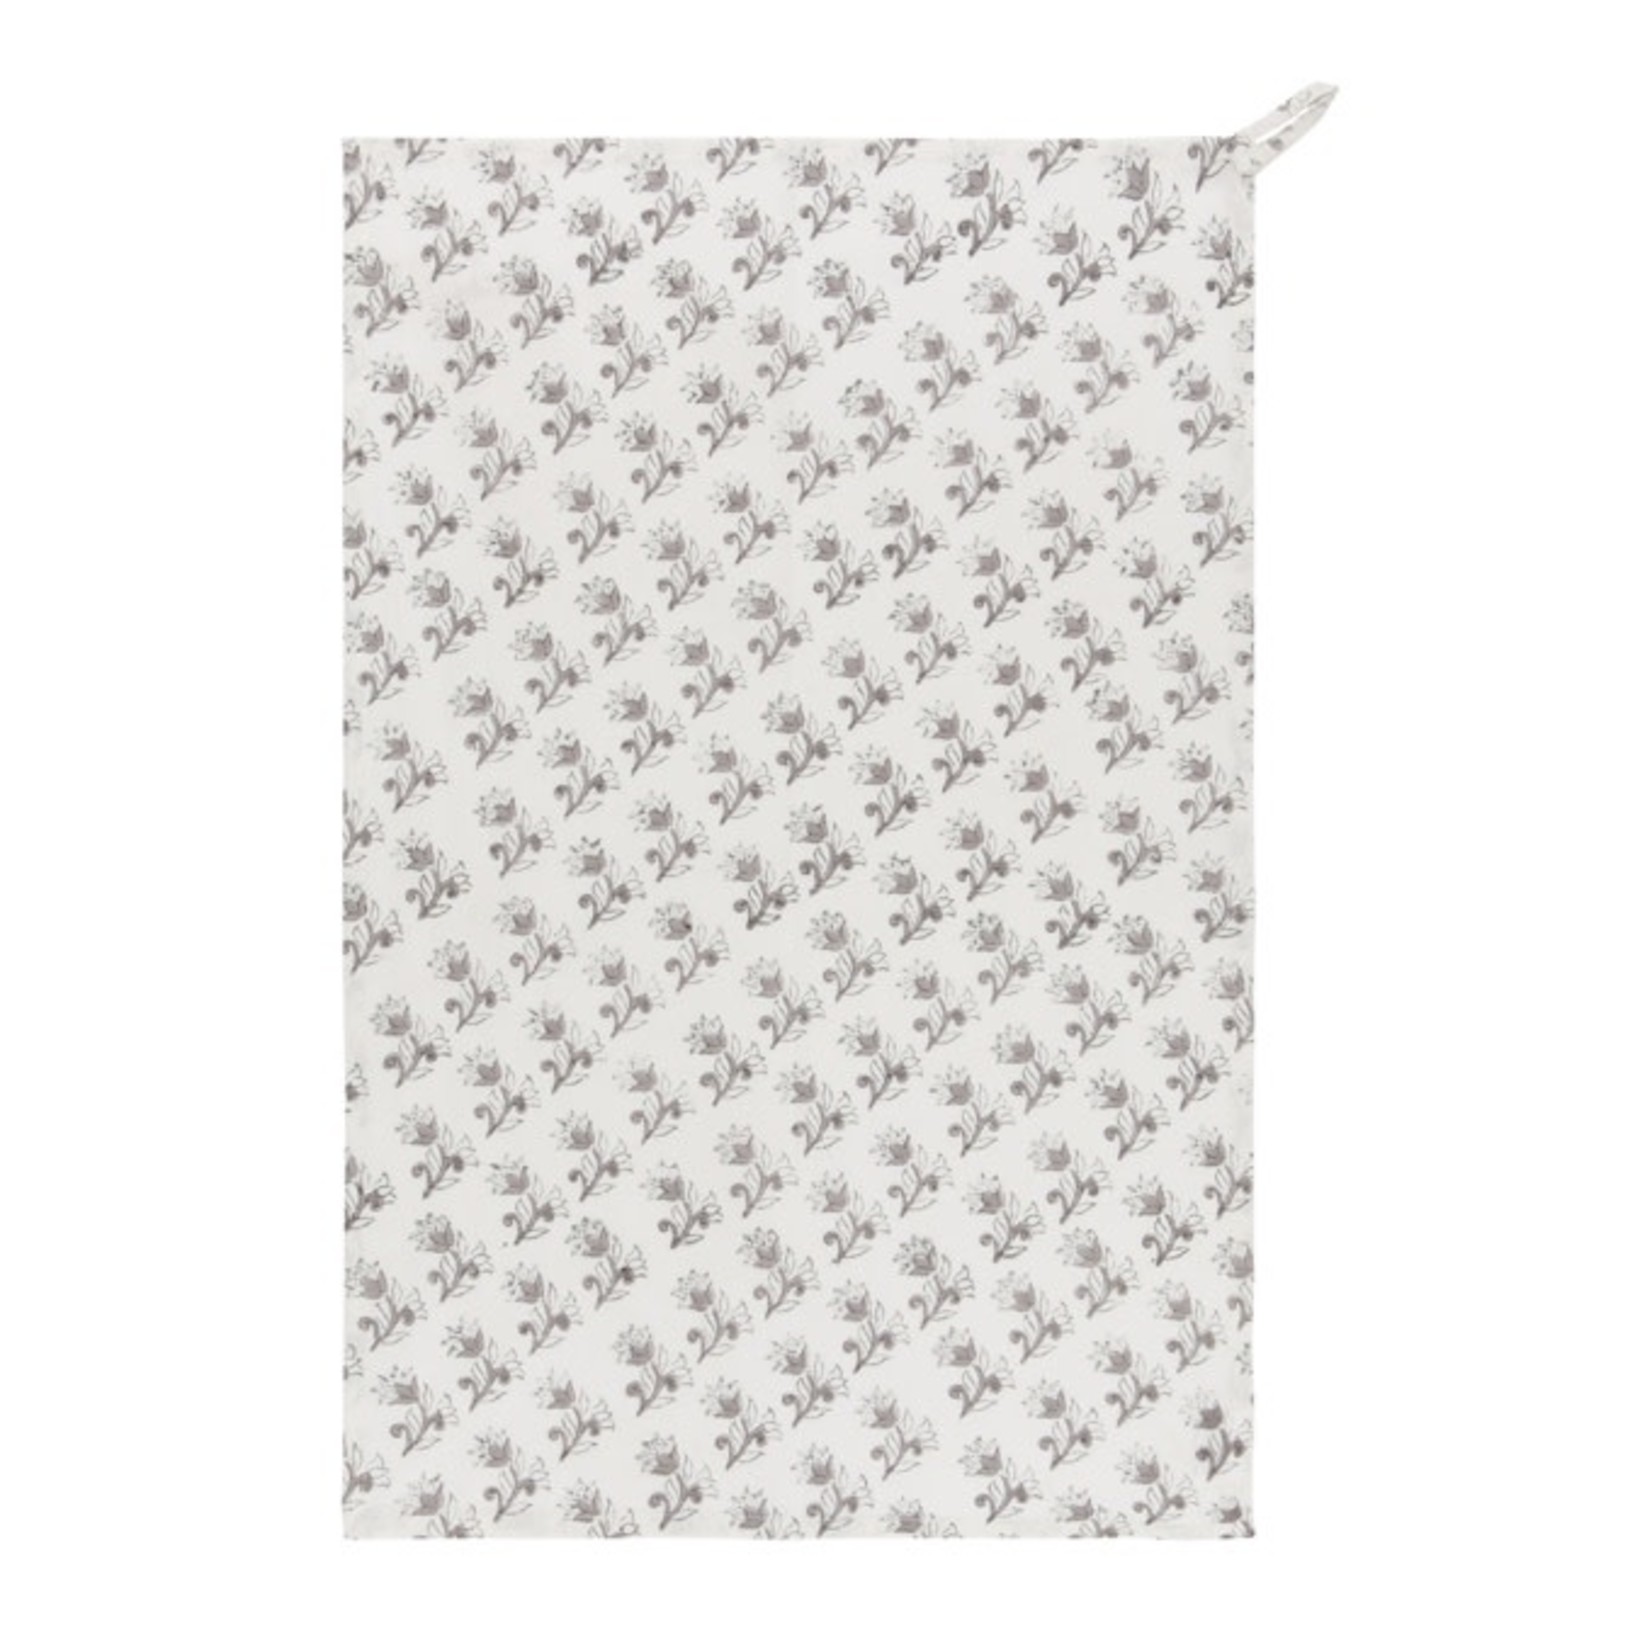 NOW DESIGNS NOW DESIGNS Tea Towel Block Print - Floret DNR